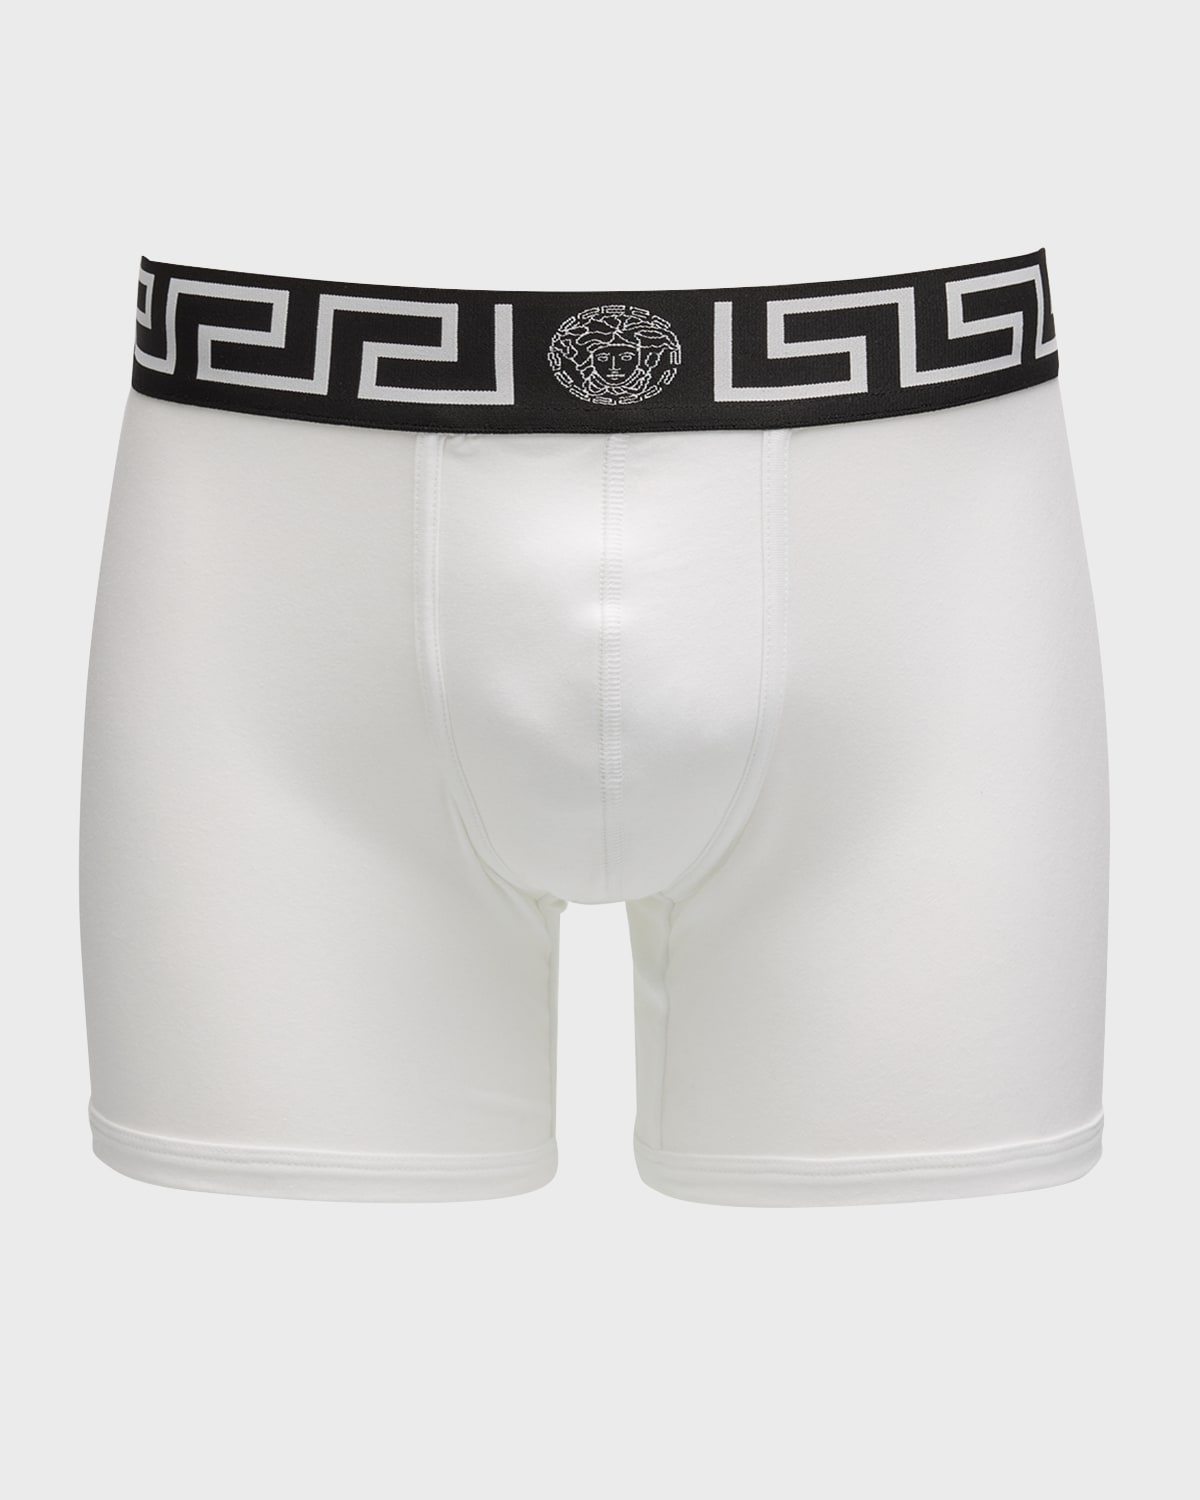 Versace Greca Border Long Boxer Trunks In White